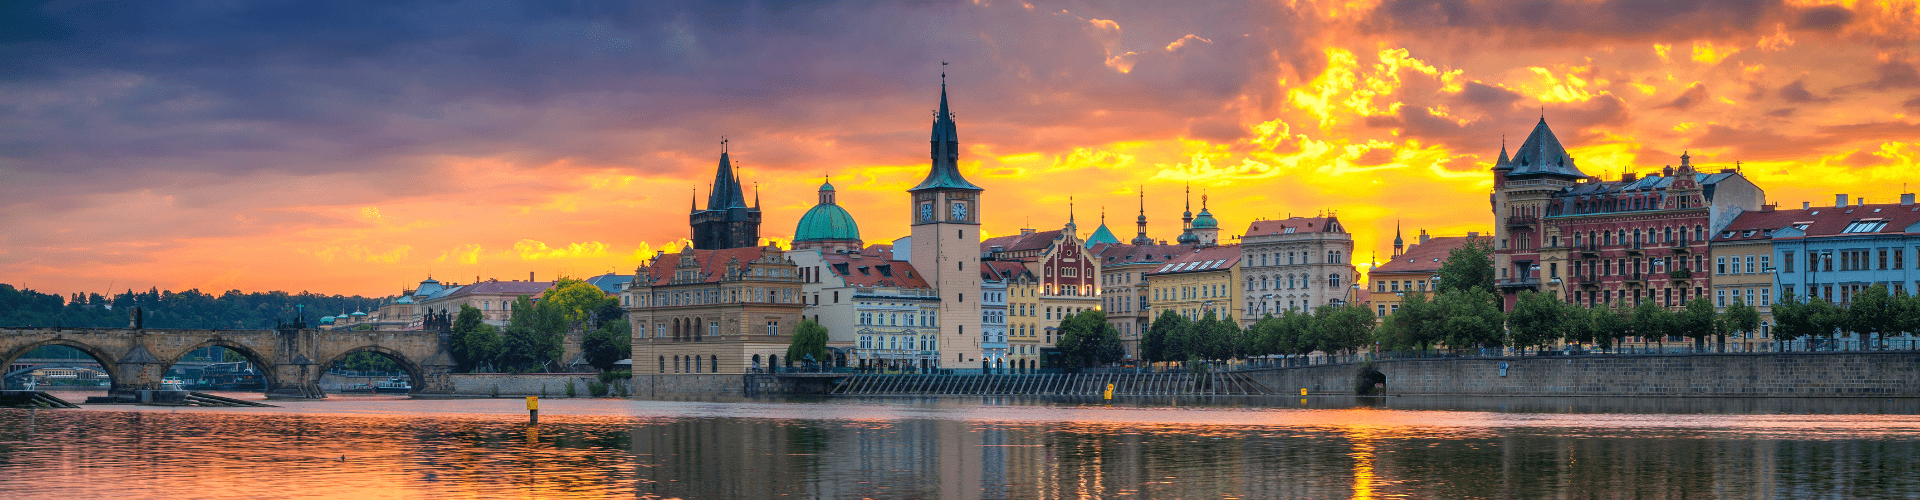 Češka - Prag - AquaTravel.rs